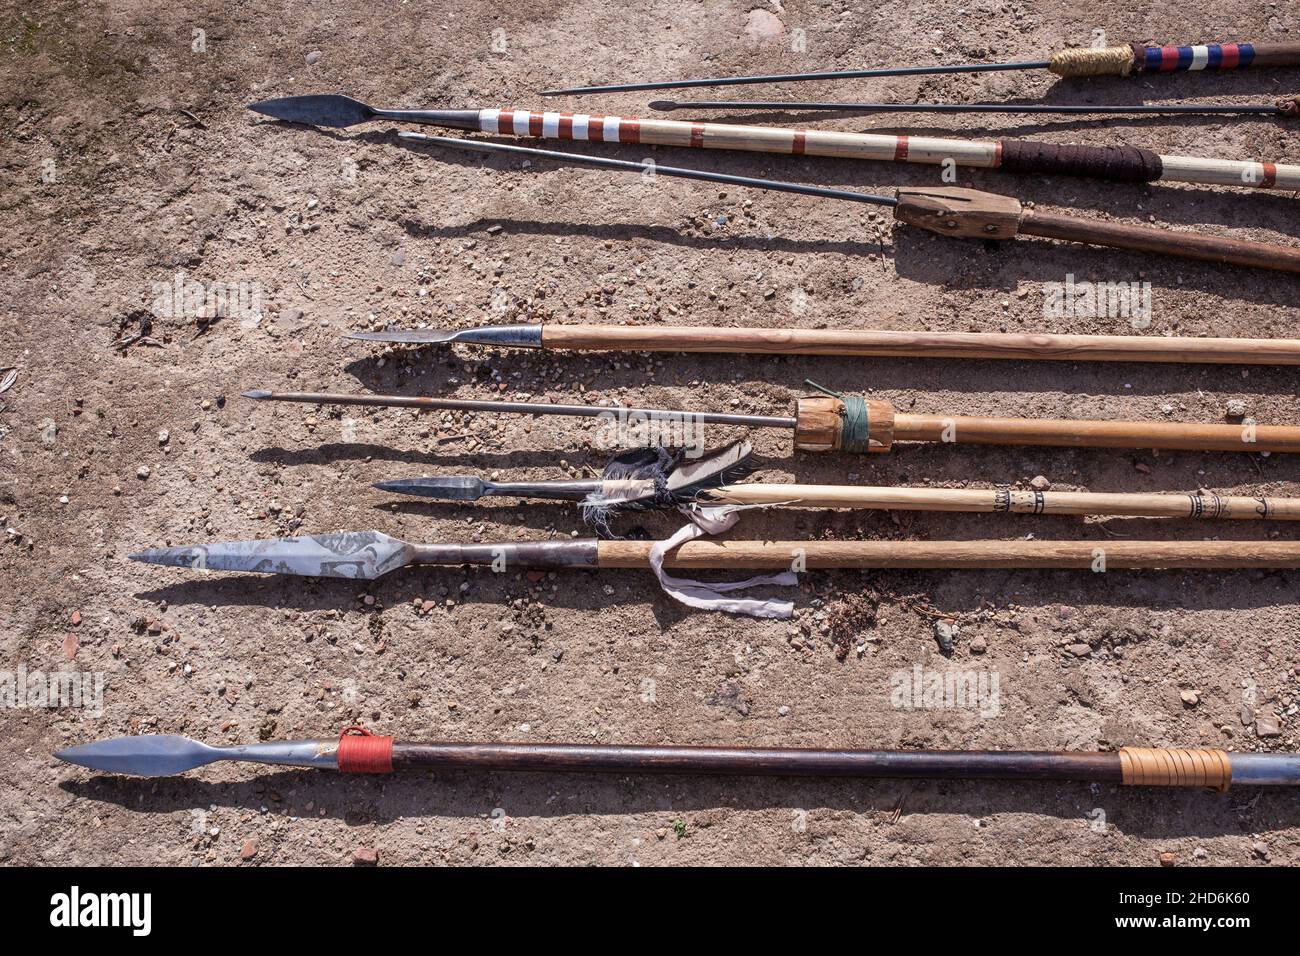 Diversi tipi di lance e giaveline dei tempi antichi. Repliche di armi della penisola iberica pre-romana e dei primi romani. Foto Stock